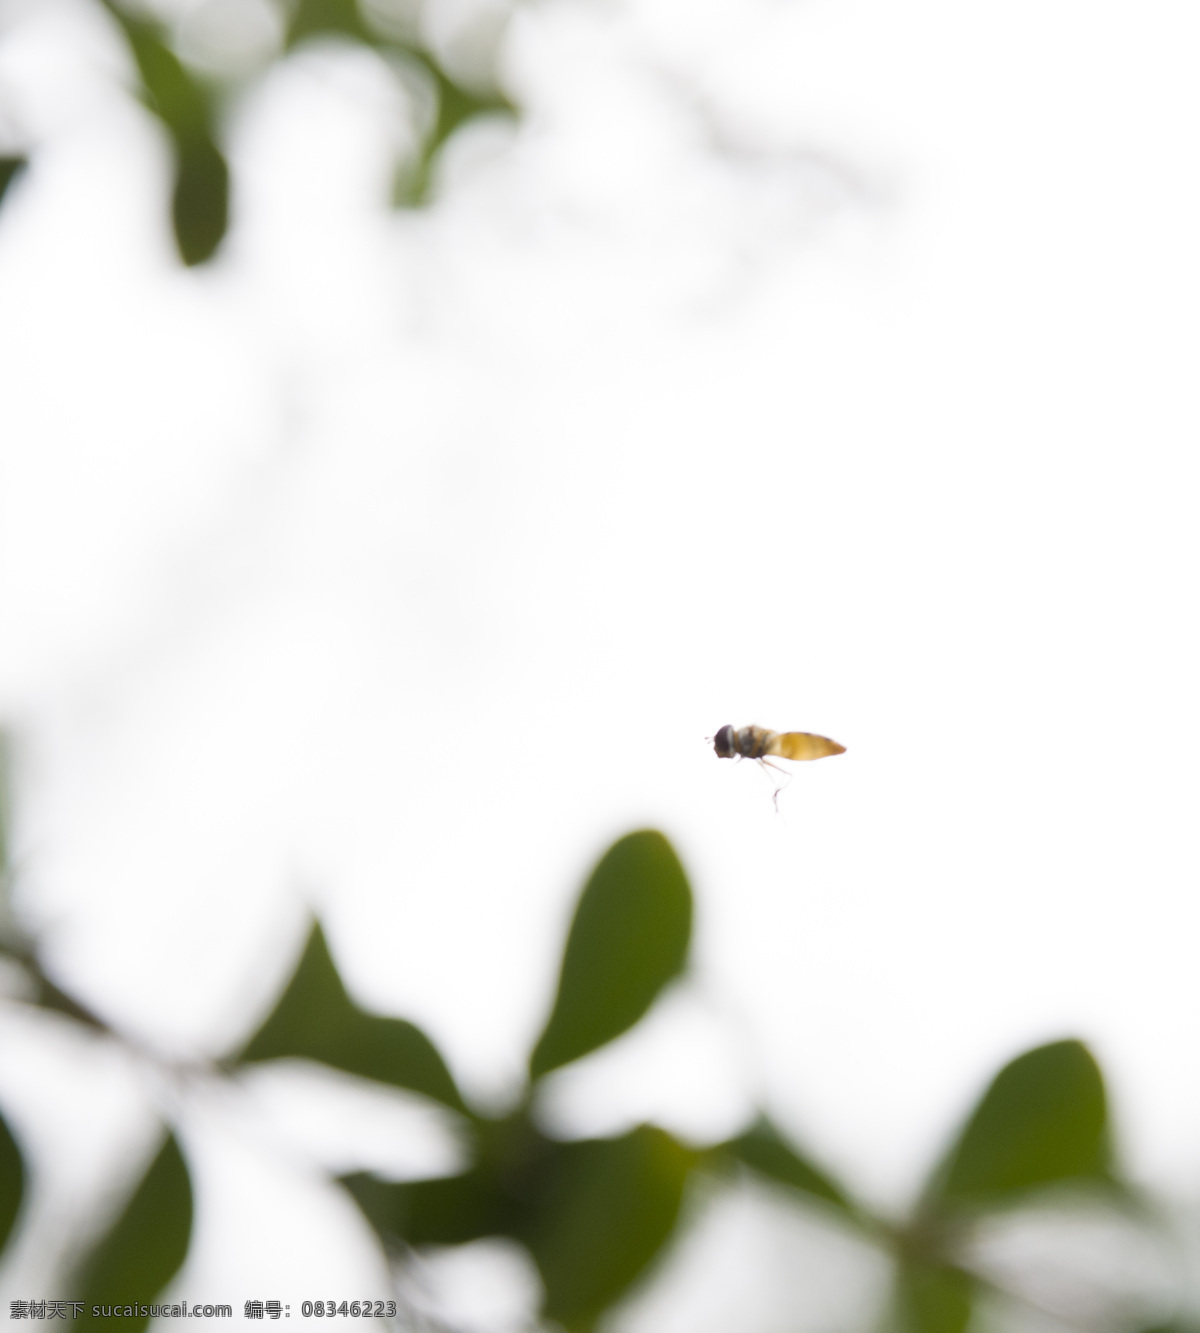 蜜蜂 飞行 花丛 昆虫 忙碌 蜜蜂采蜜 生物世界 桃花 枝头 花丛中 小蜜蜂 大蜜蜂